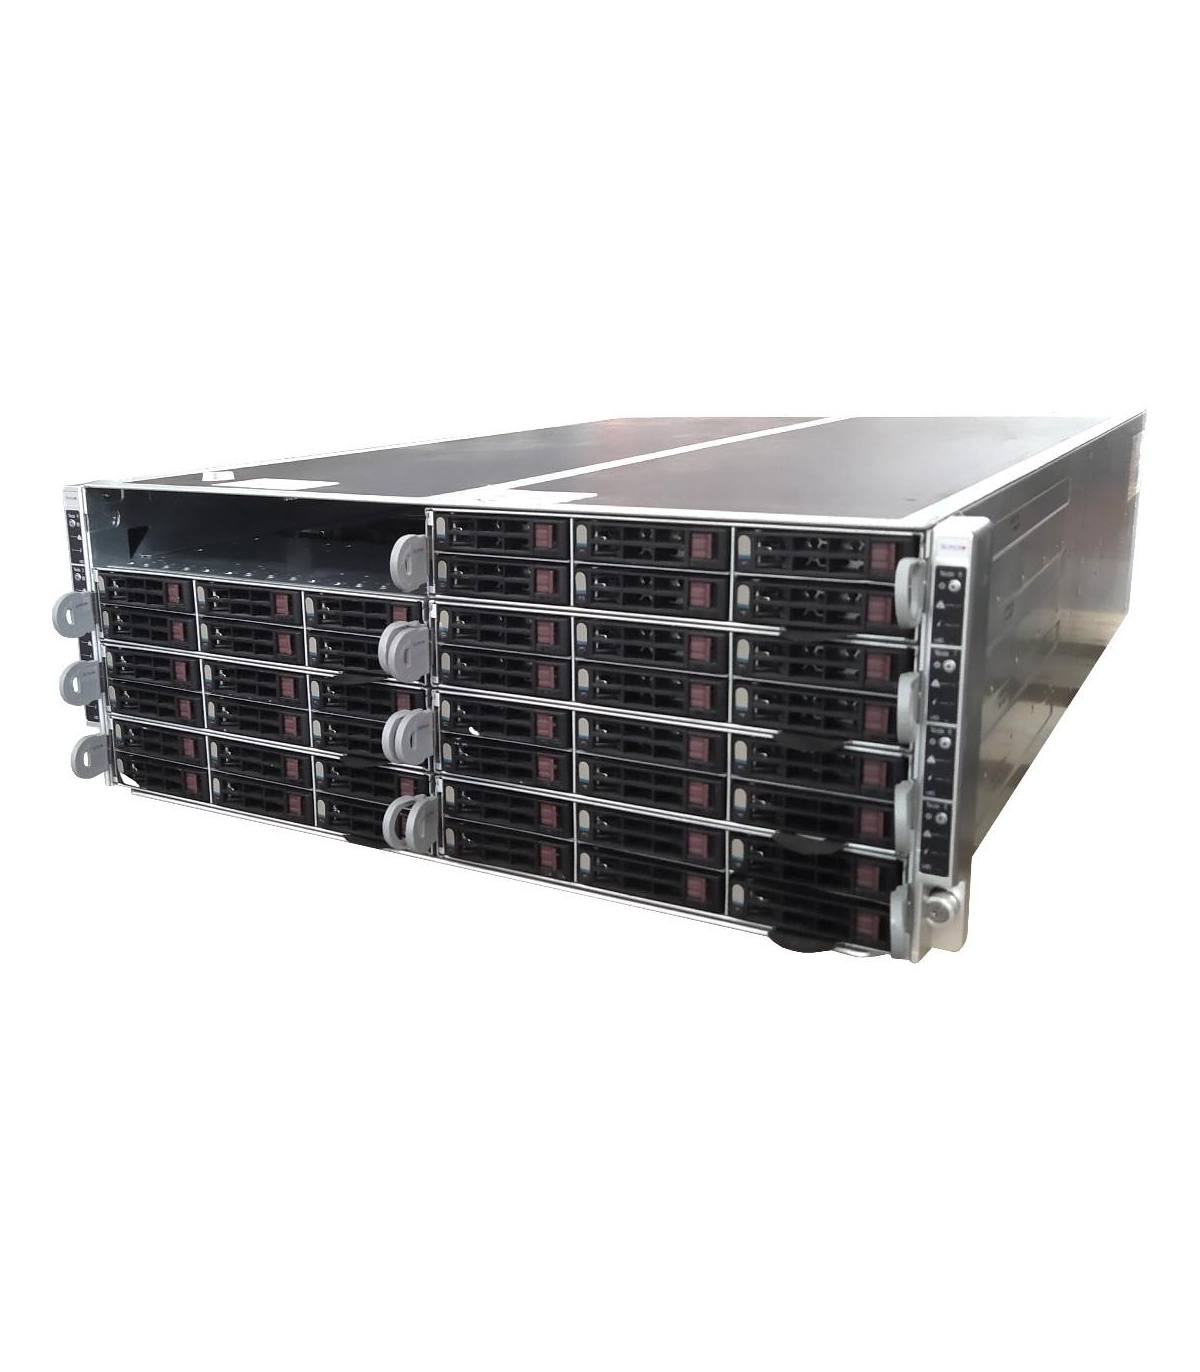 SUPERMICRO CSE-418 F617R2-R72 4X1620W + 7X X9DRFR NODE REV 2.00 2X6C E5-2620 2.00 GHz 16GB 6X2,5" IPMI